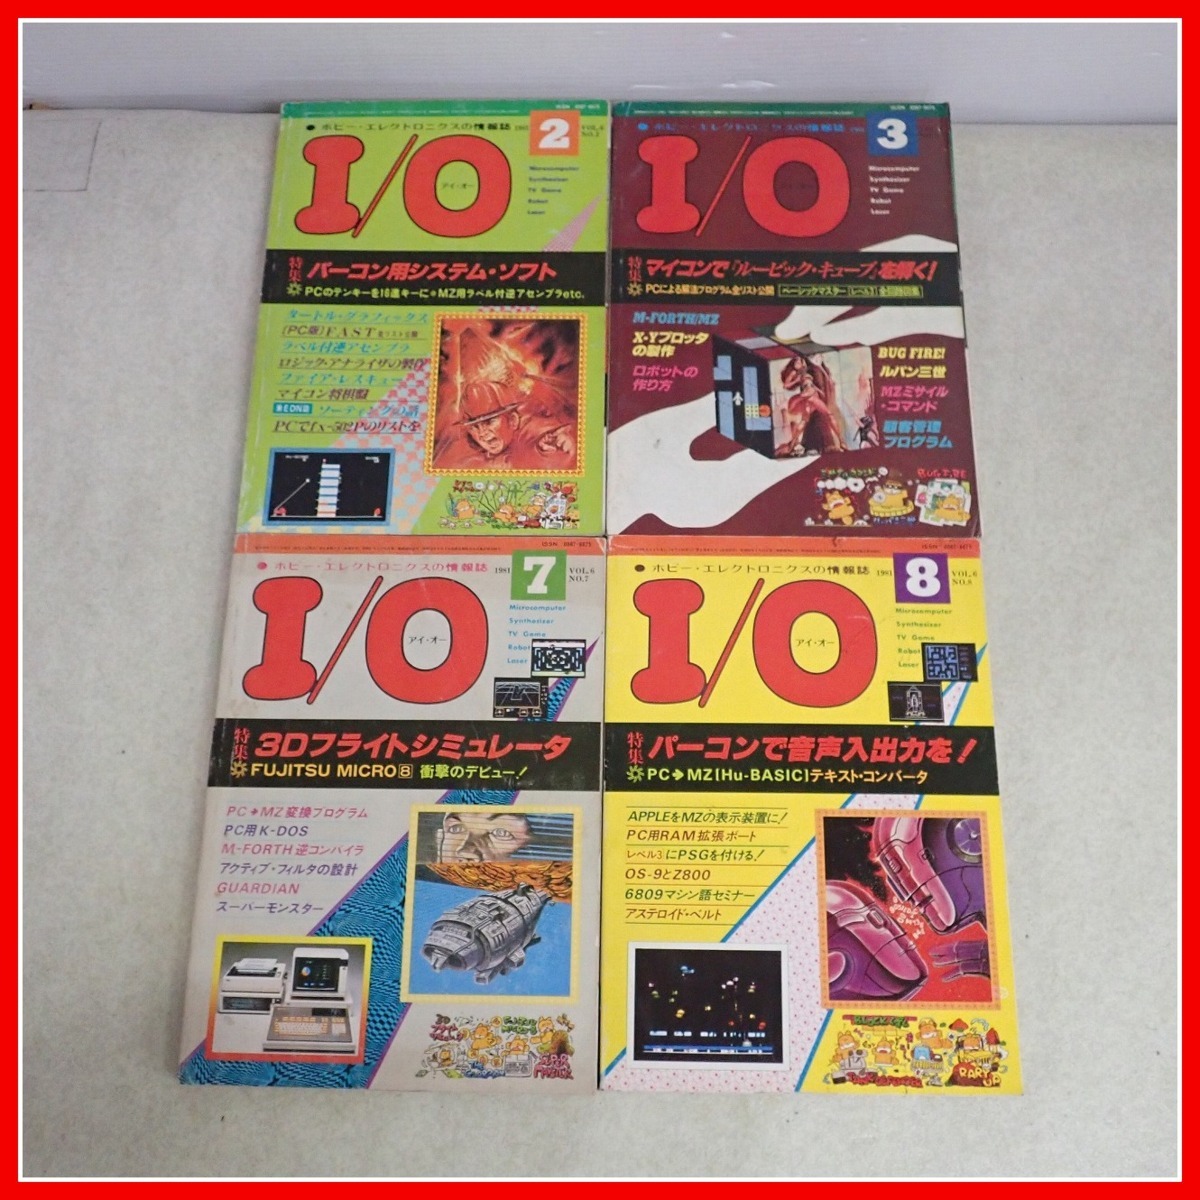 * журнал ежемесячный I/O/ I *o-1981 год продажа минут совместно 7 шт. комплект инженерия фирма хобби * electronics информация журнал компьютер соответствующие книги [10